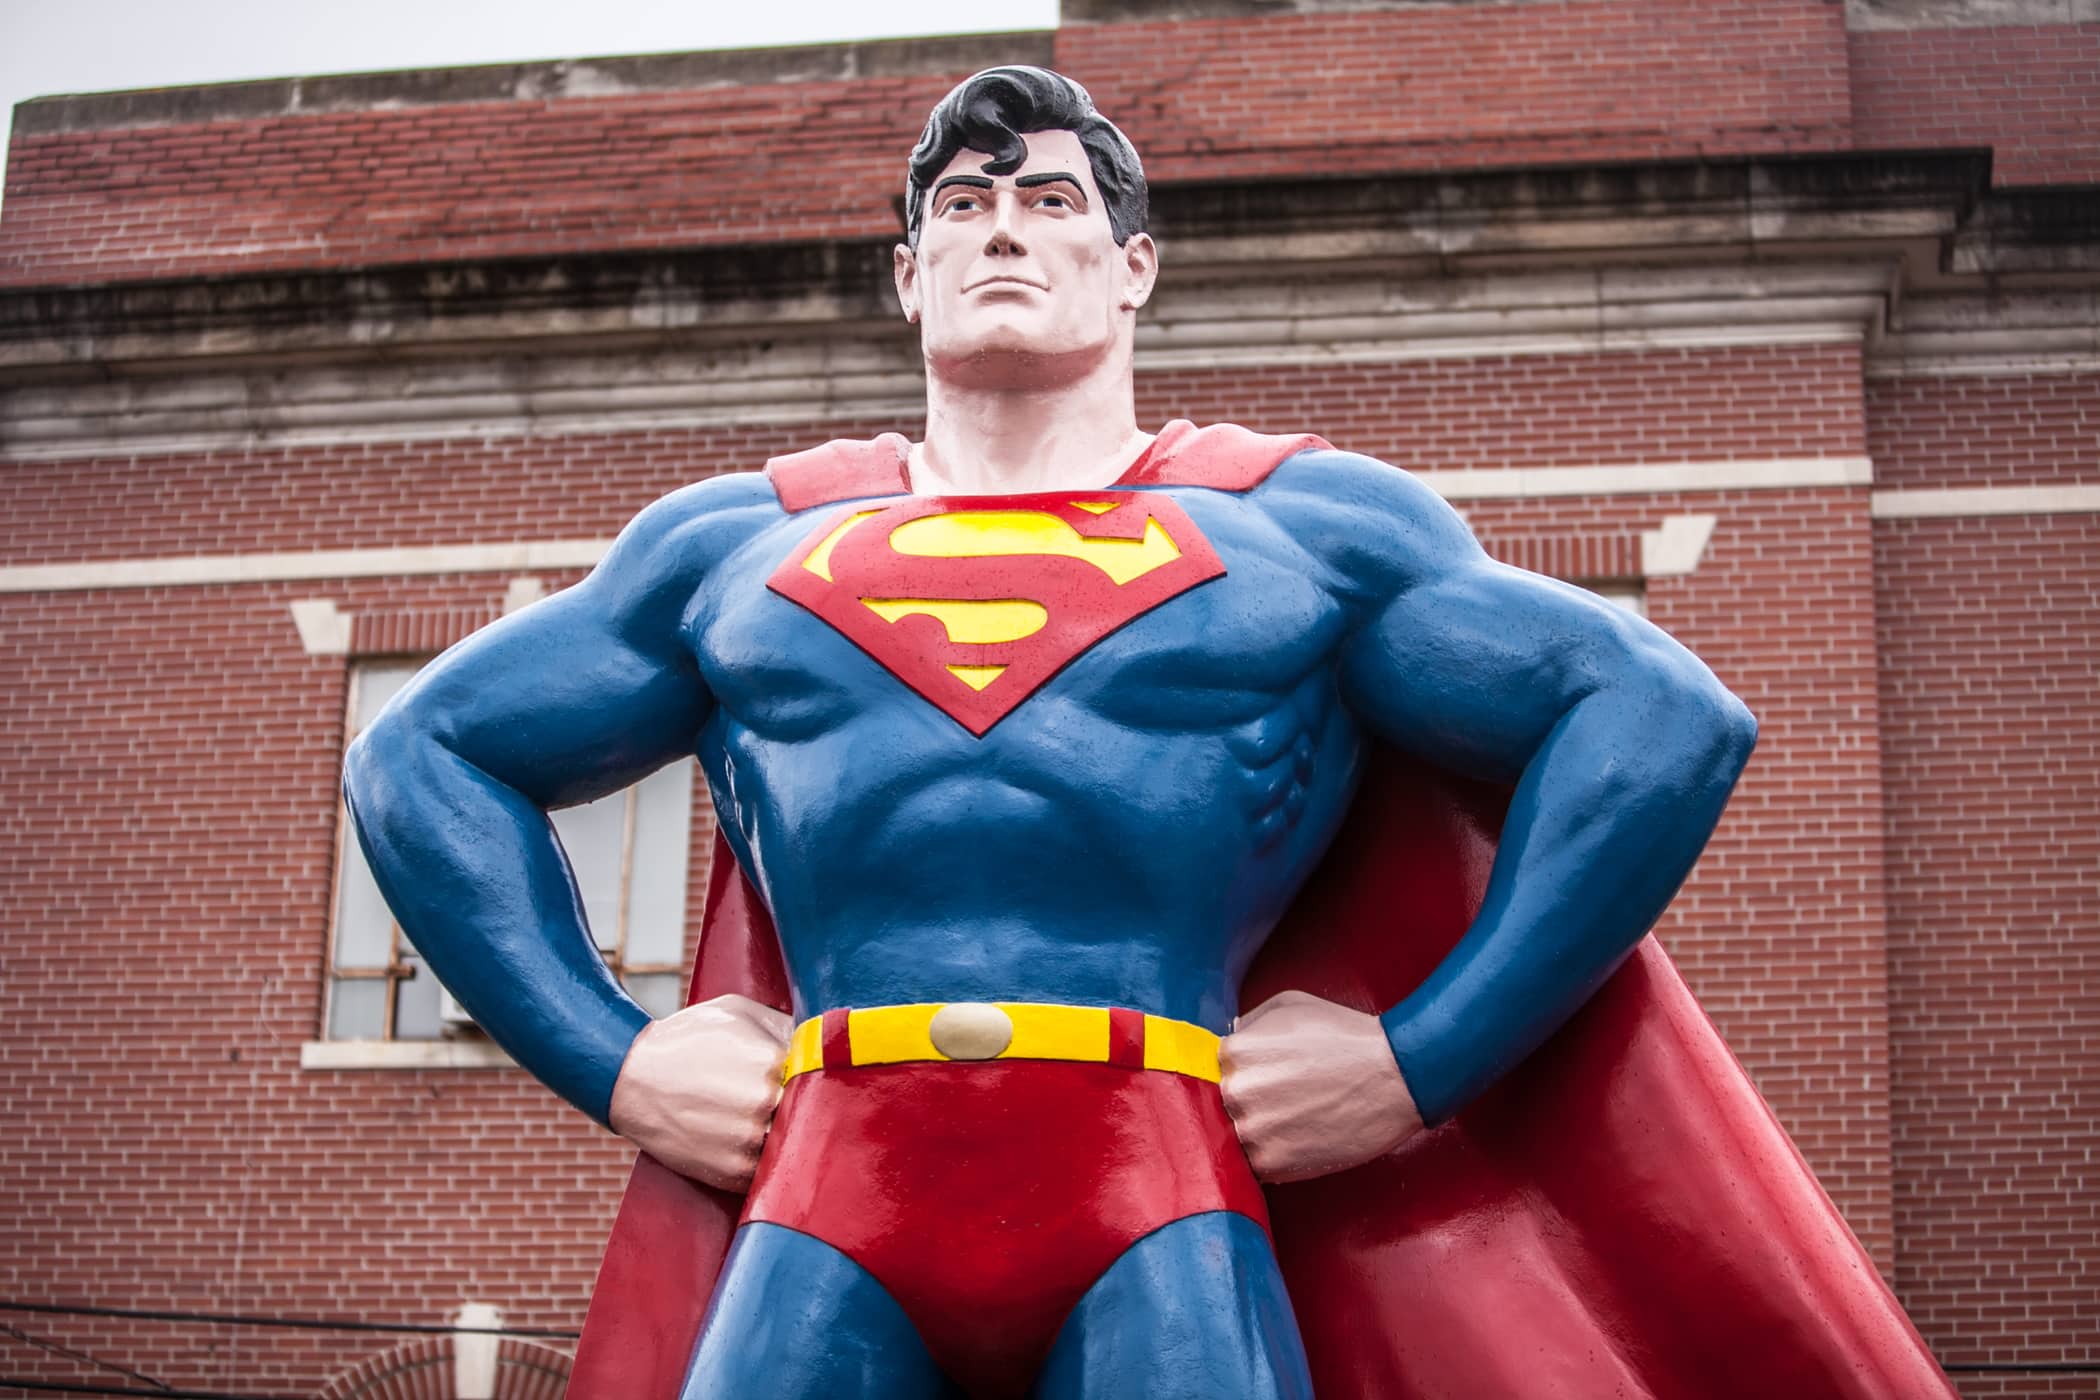 Giant Superman Statue in Metropolis, Illinois.